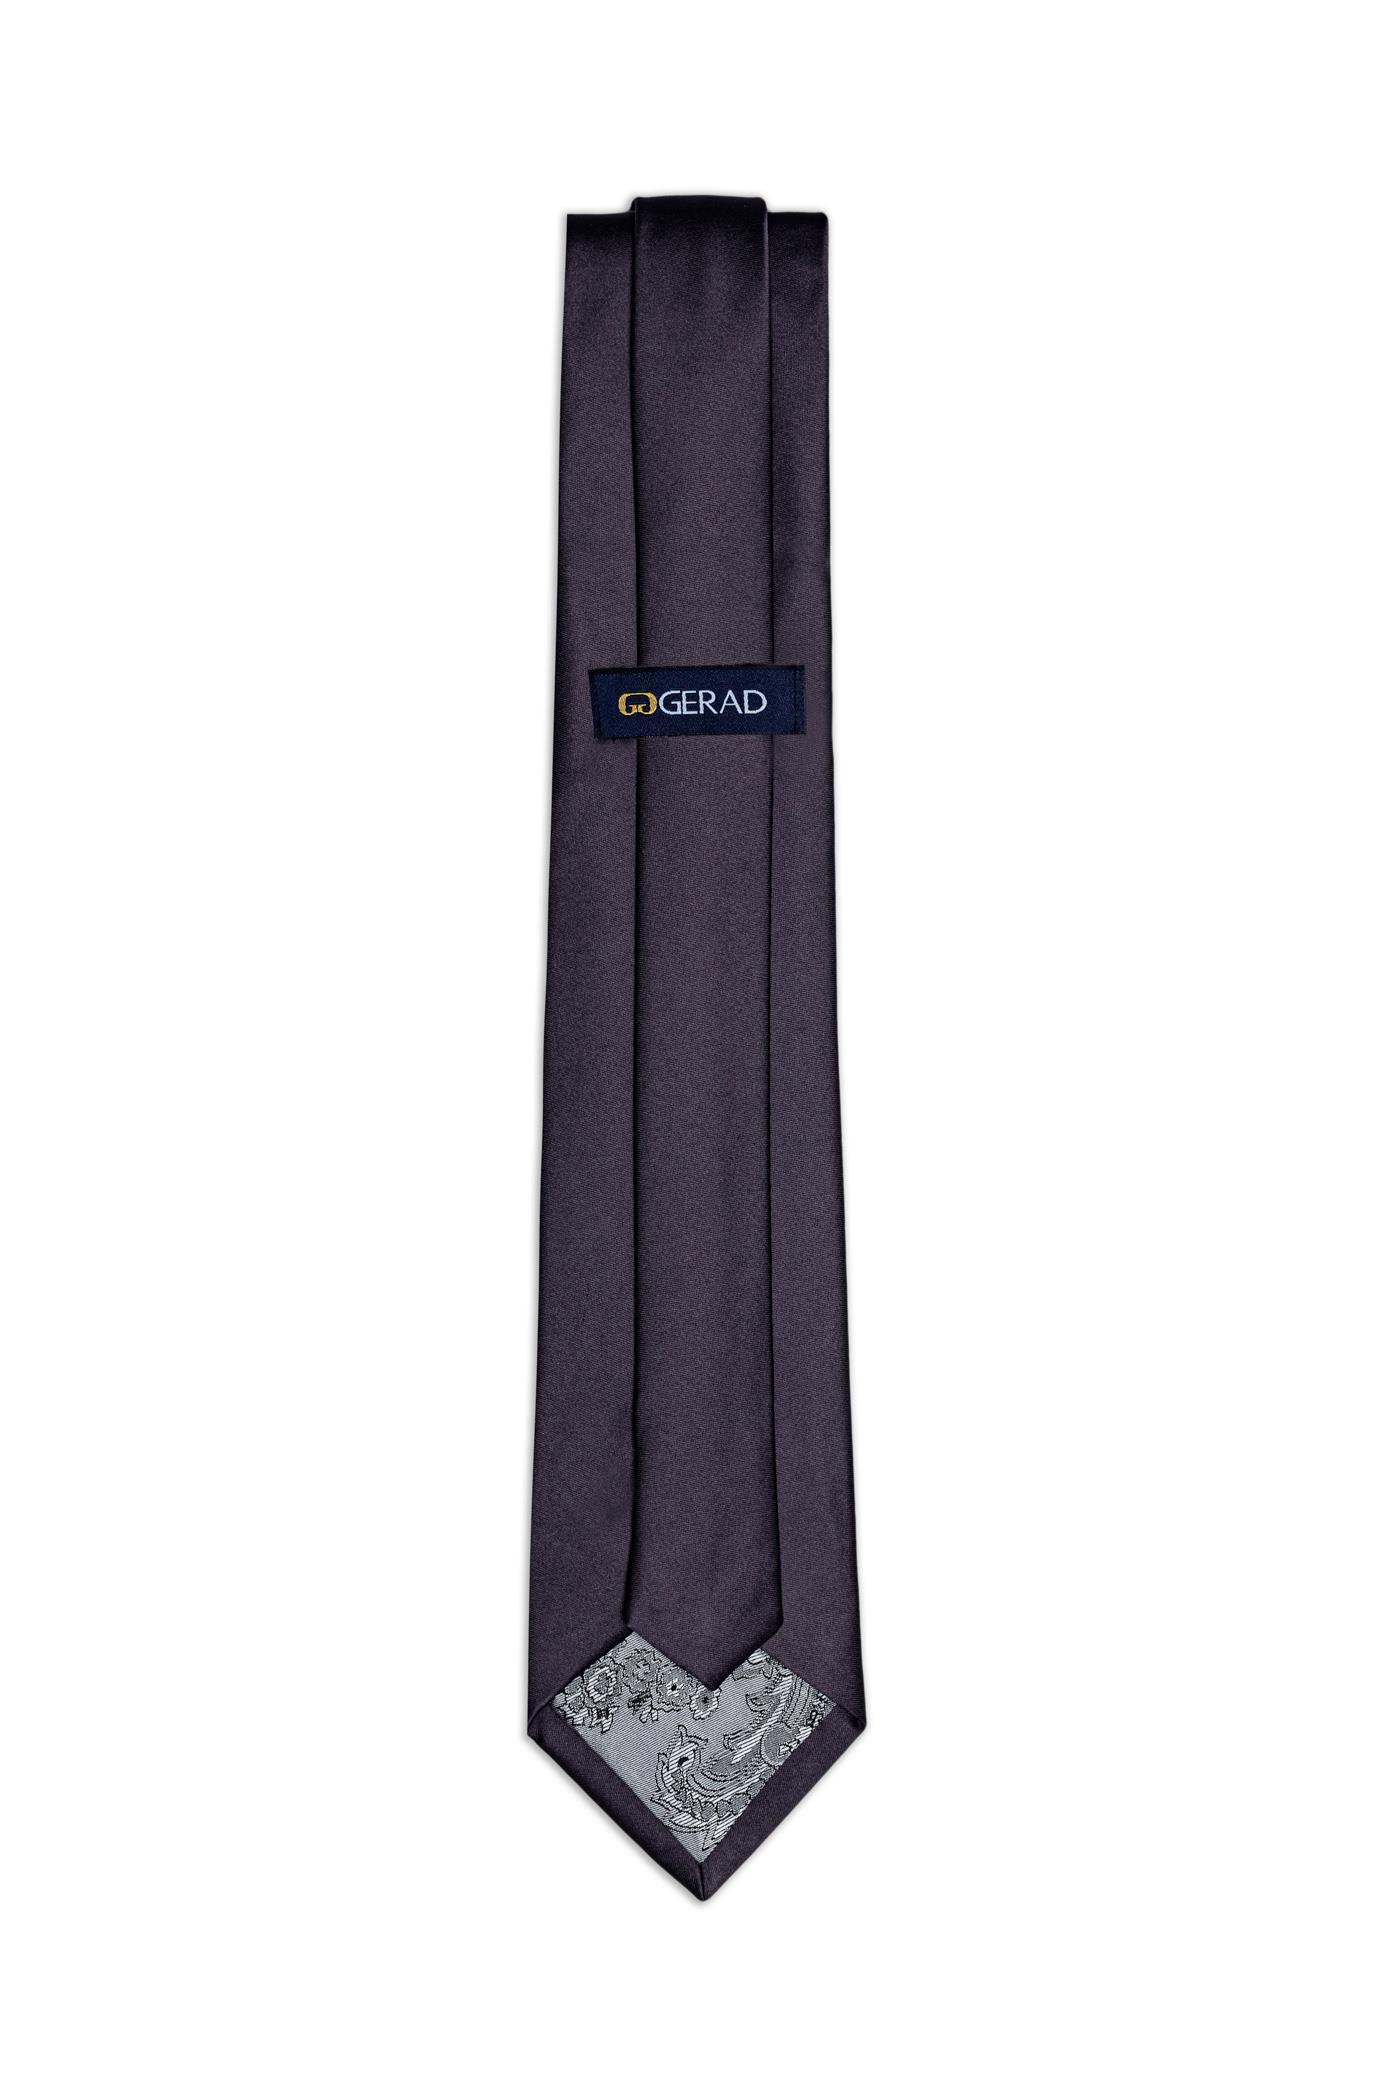 کراوات ساده (پوشت دار) 200017